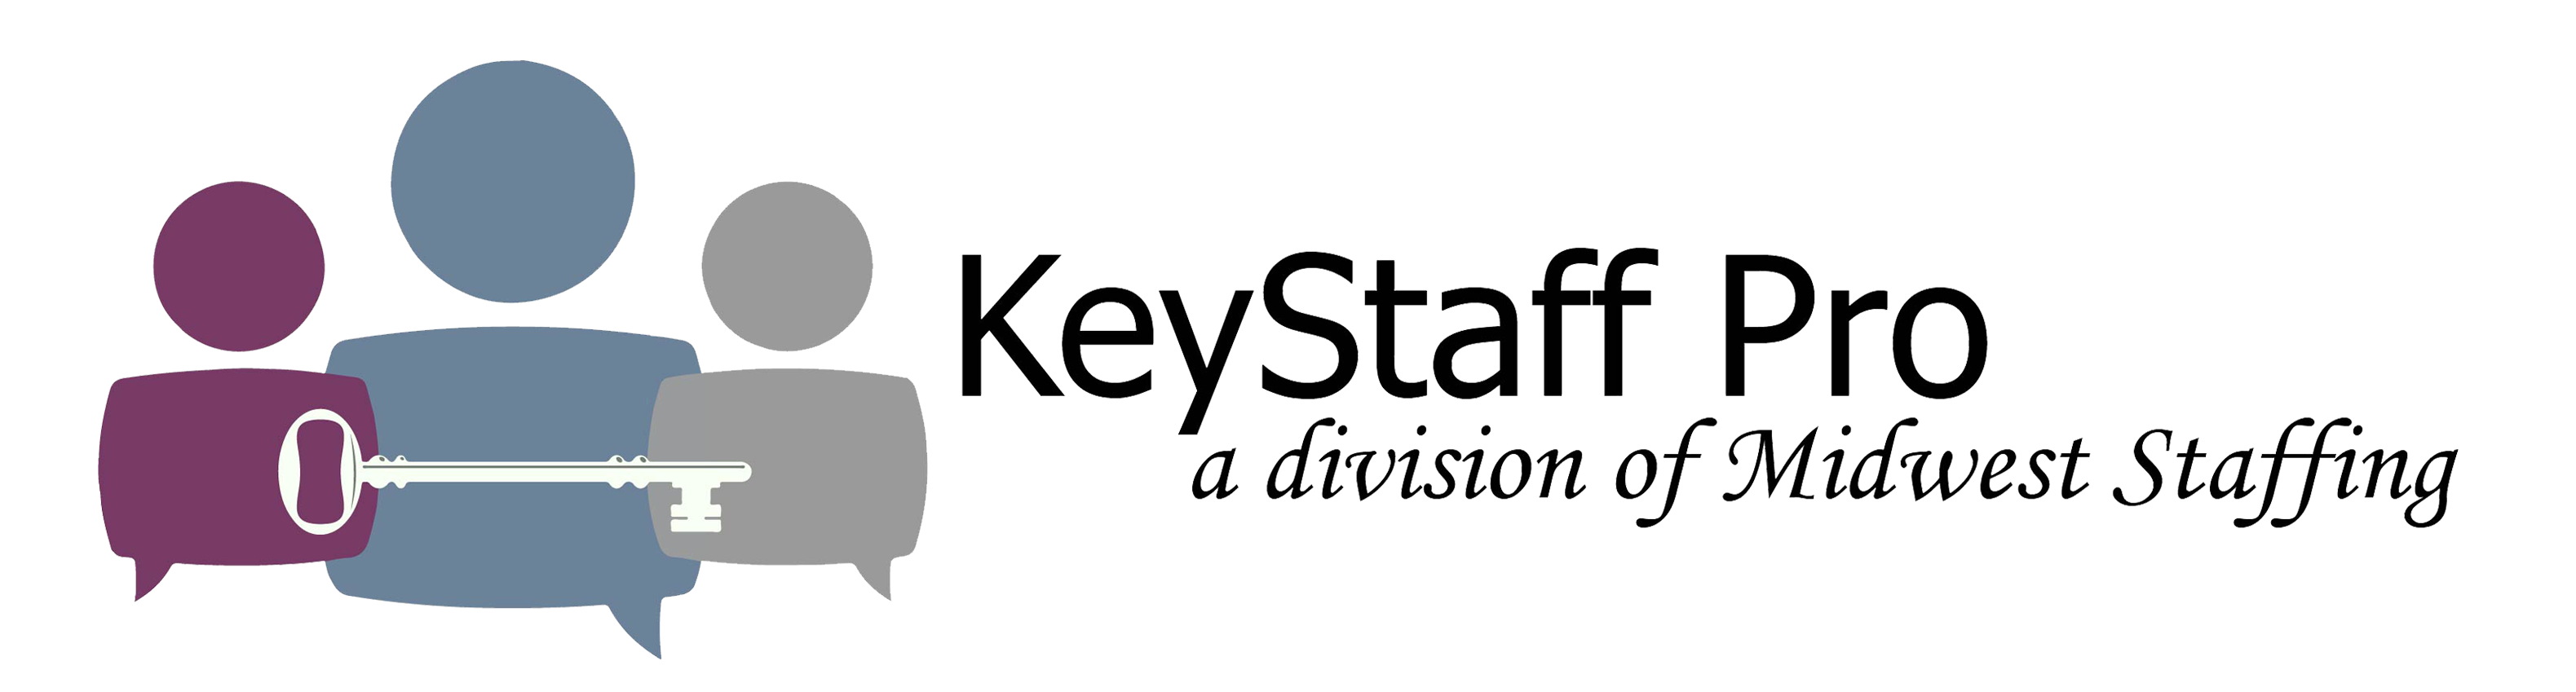 shift key staffing